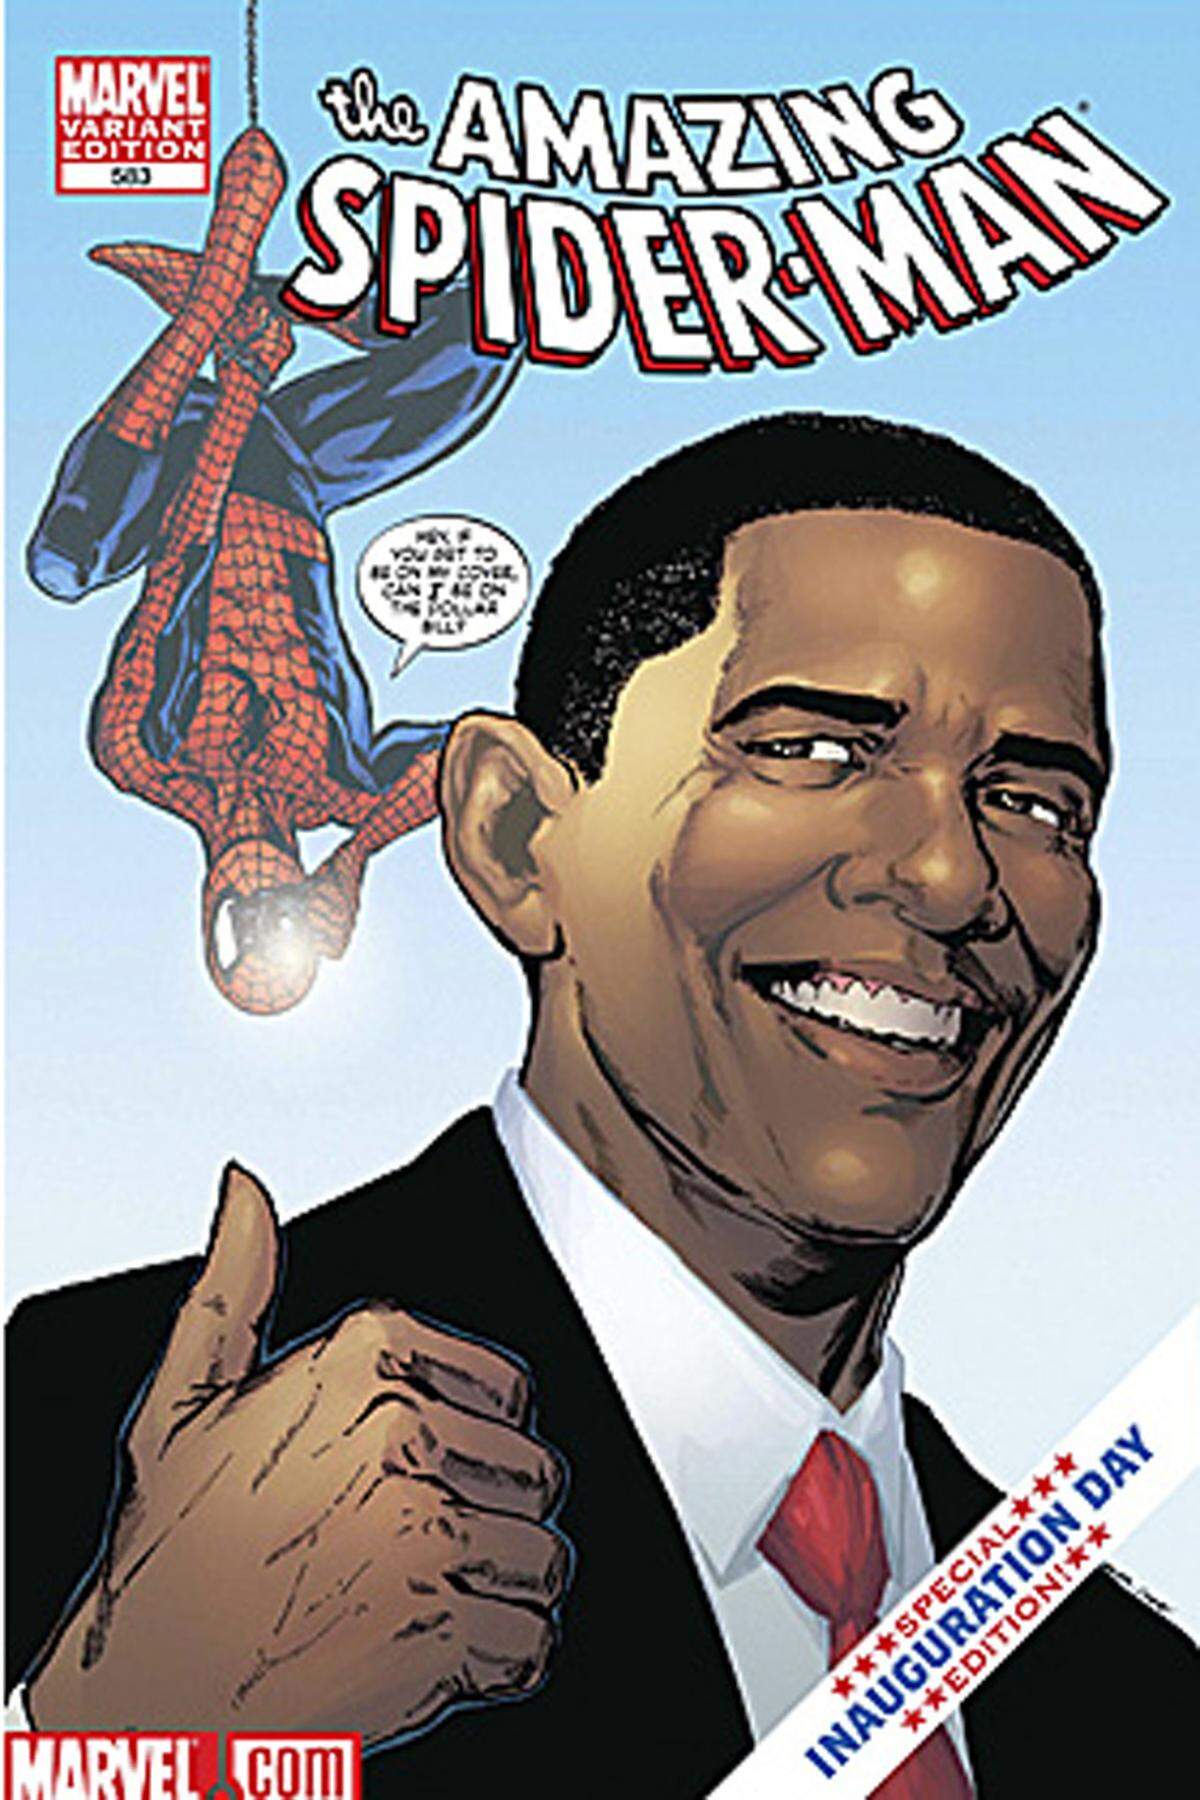 Barack Obama hat nie einen Hehl daraus gemacht, dass er ein Spiderman-Fan ist. Zu seiner Angelobung als US-Präsident im Jahr 2009 durfte er daher prompt als Comic-Held fungieren und gemeinsam mit seinem Idol gegen einen bösen Doppelgänger antreten.